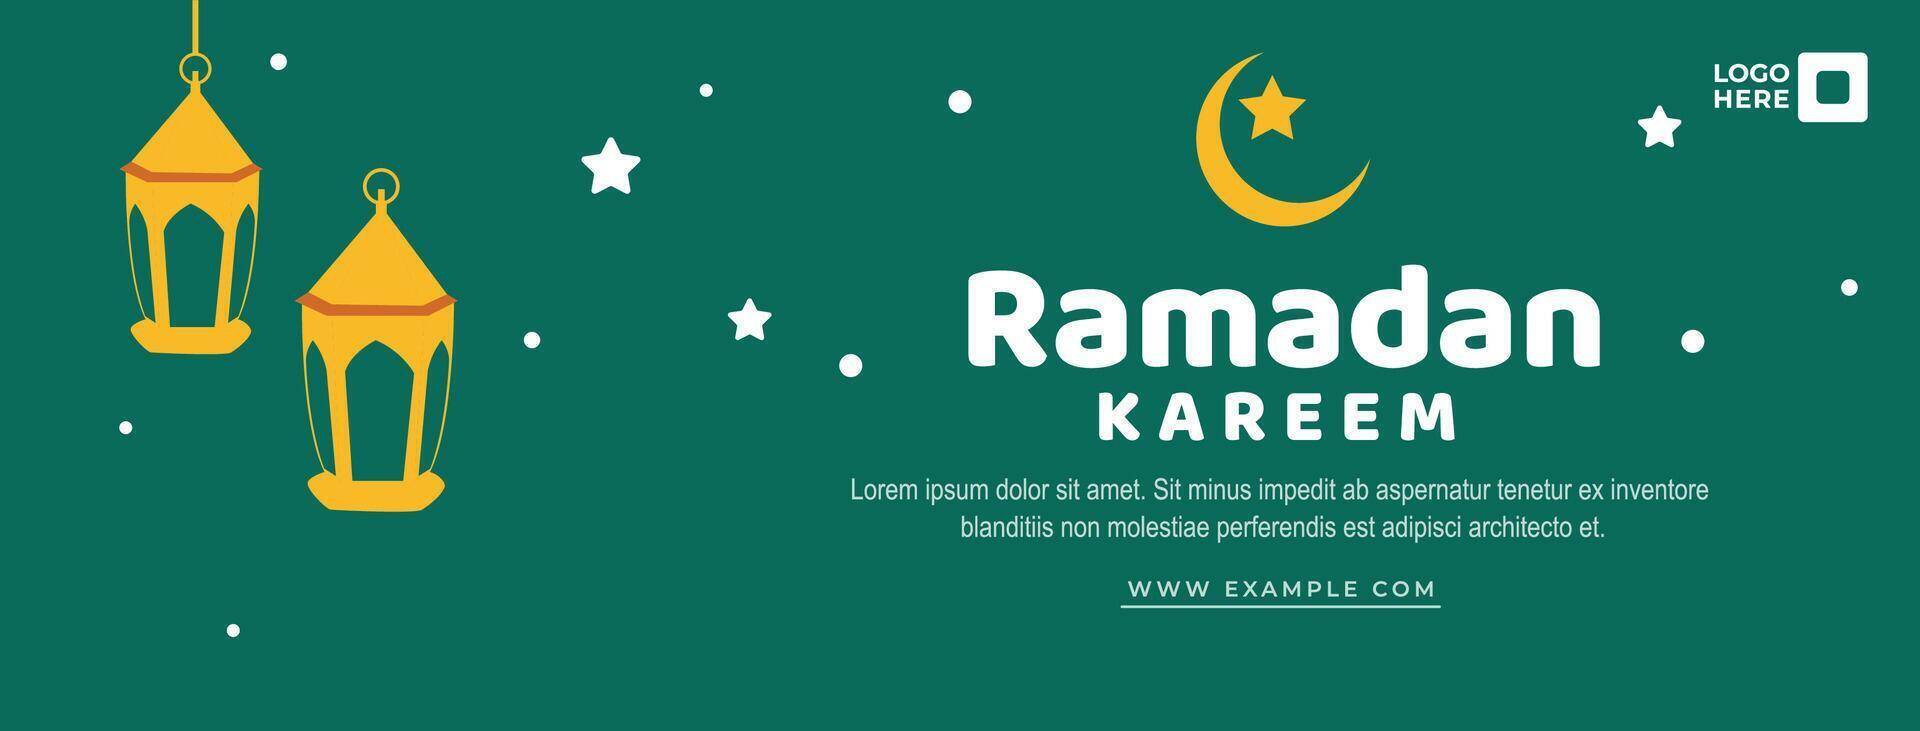 ramadan kareem groet achtergrondontwerp in groene kleur. ontwerpen voor bannersjablonen. vector